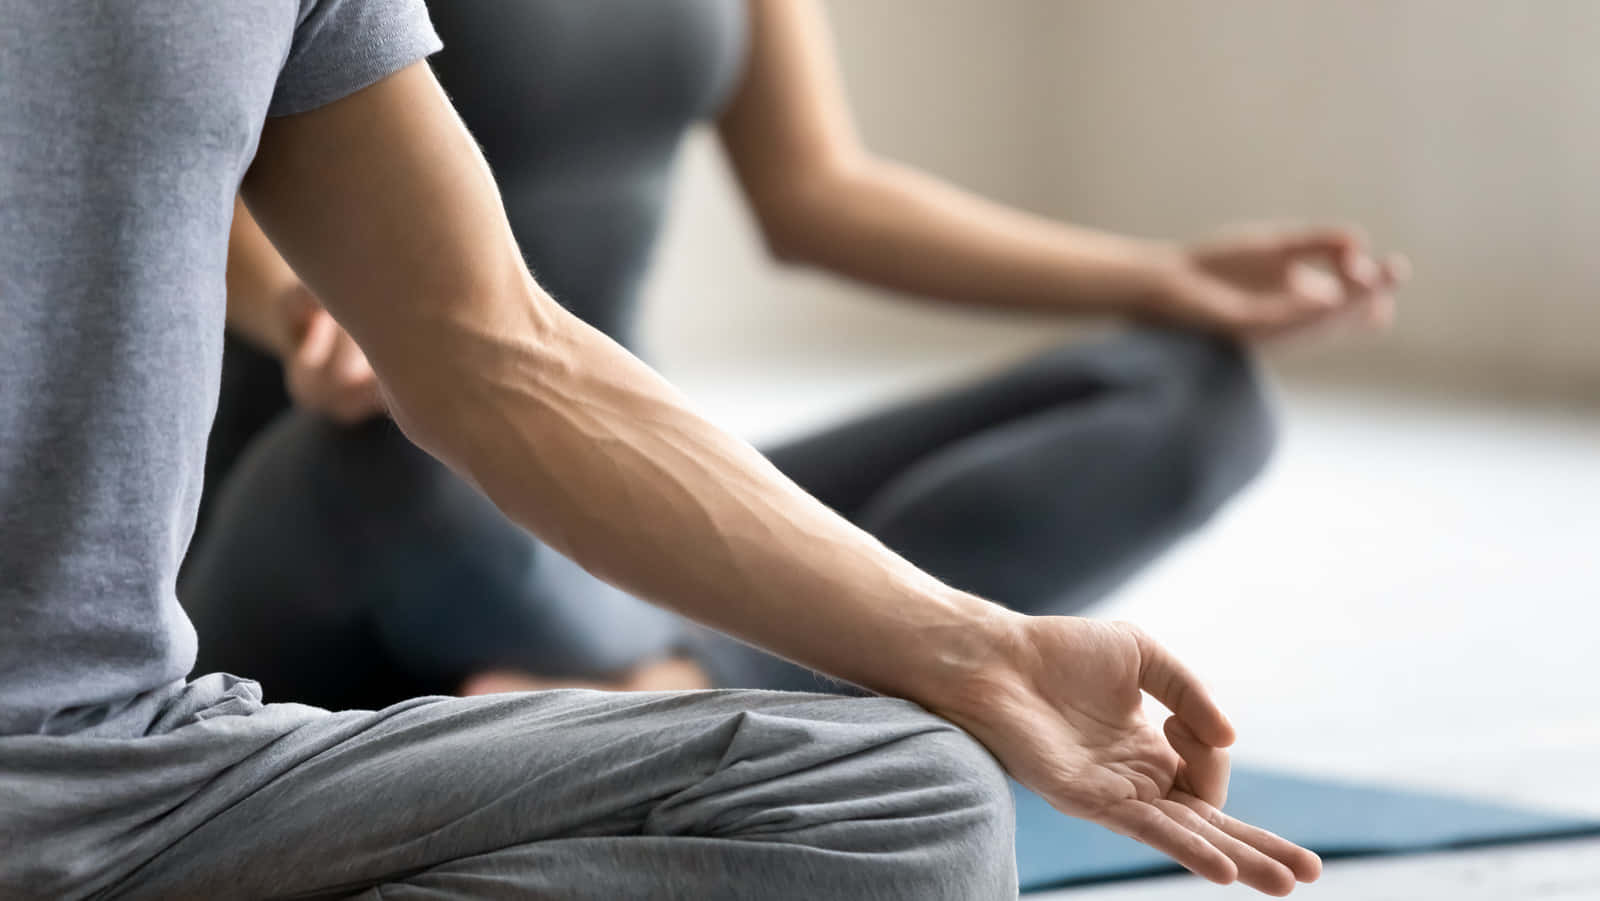 Zweipersonen Machen Yoga In Einem Yoga-studio.